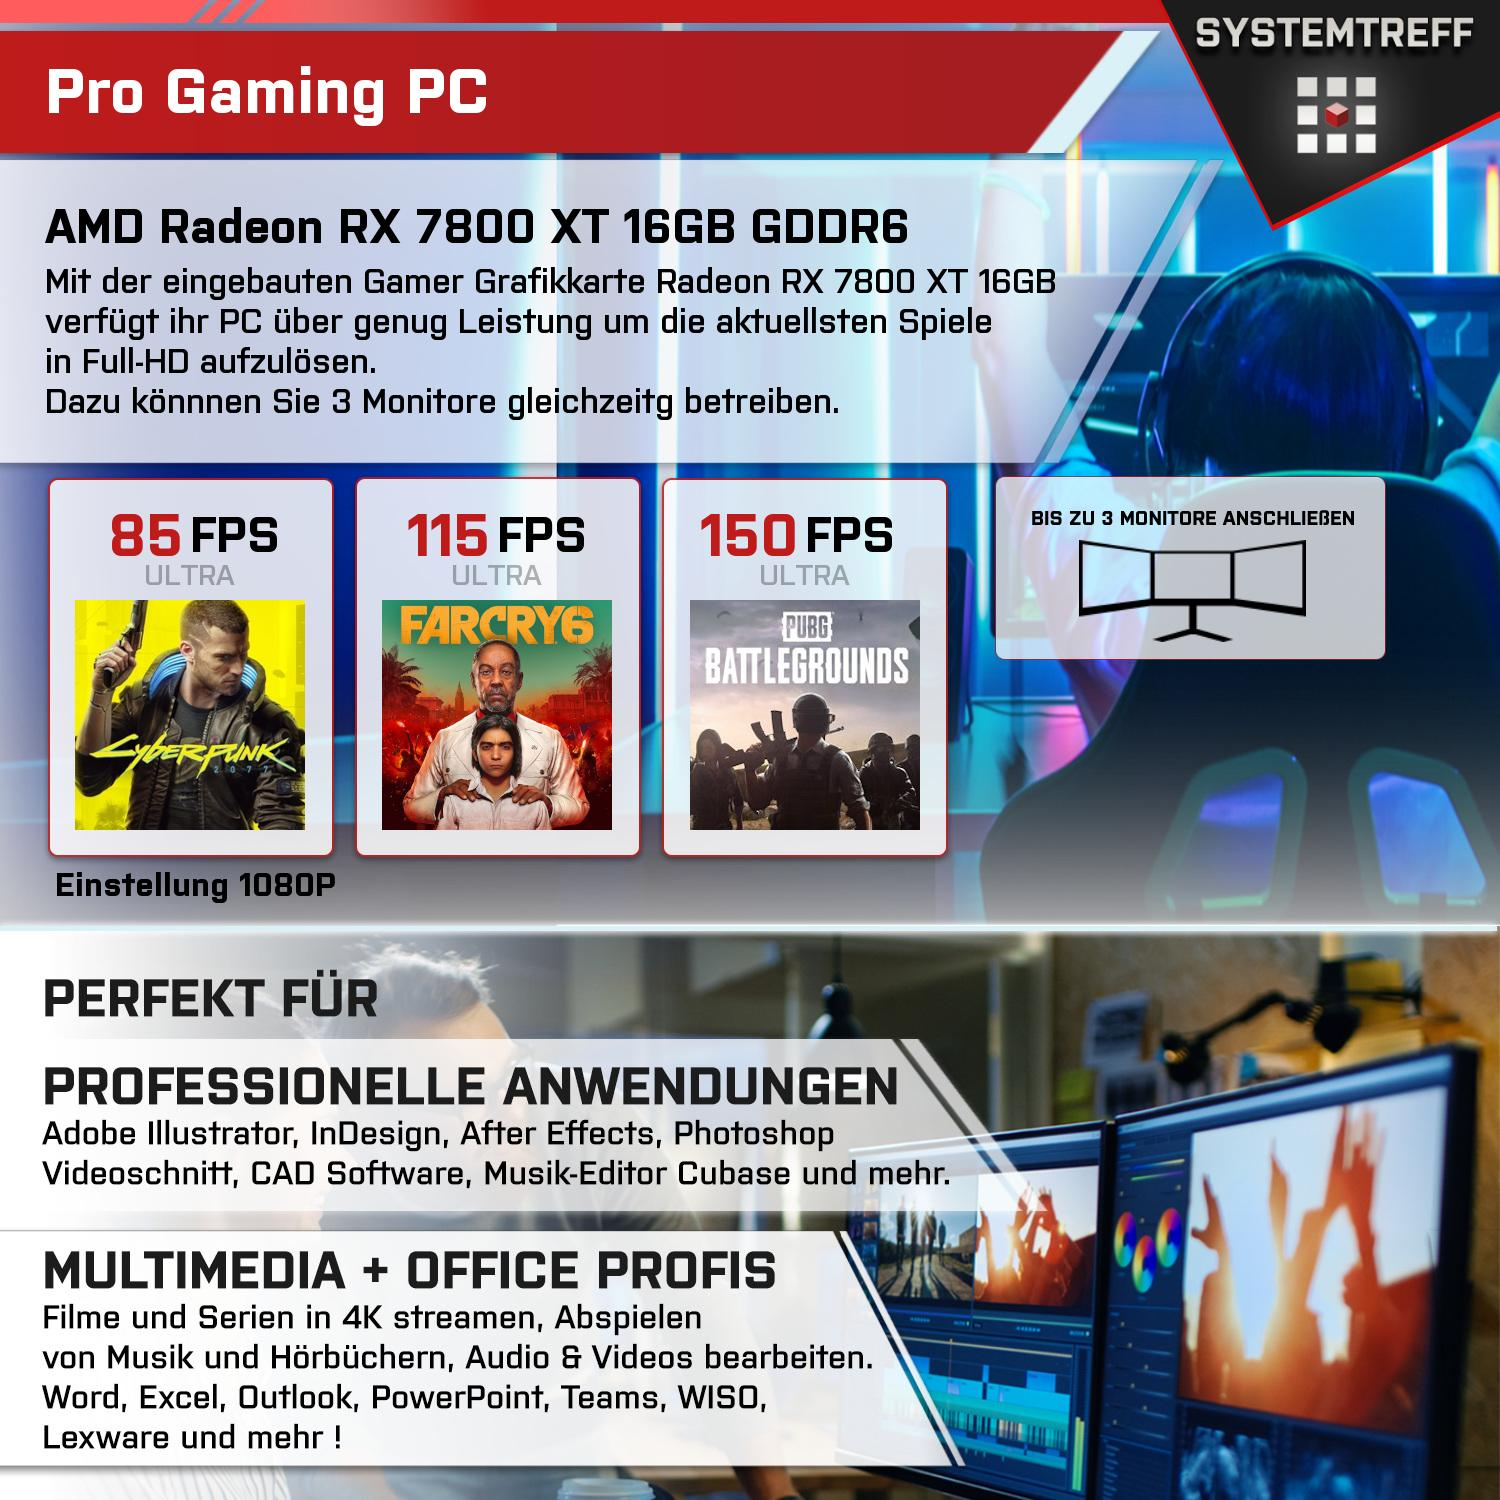 SYSTEMTREFF Gaming Komplett AMD GB mit Ryzen 1000 Prozessor, Komplett 9 7950X GB 16 32 7950X, mSSD, PC GB RAM